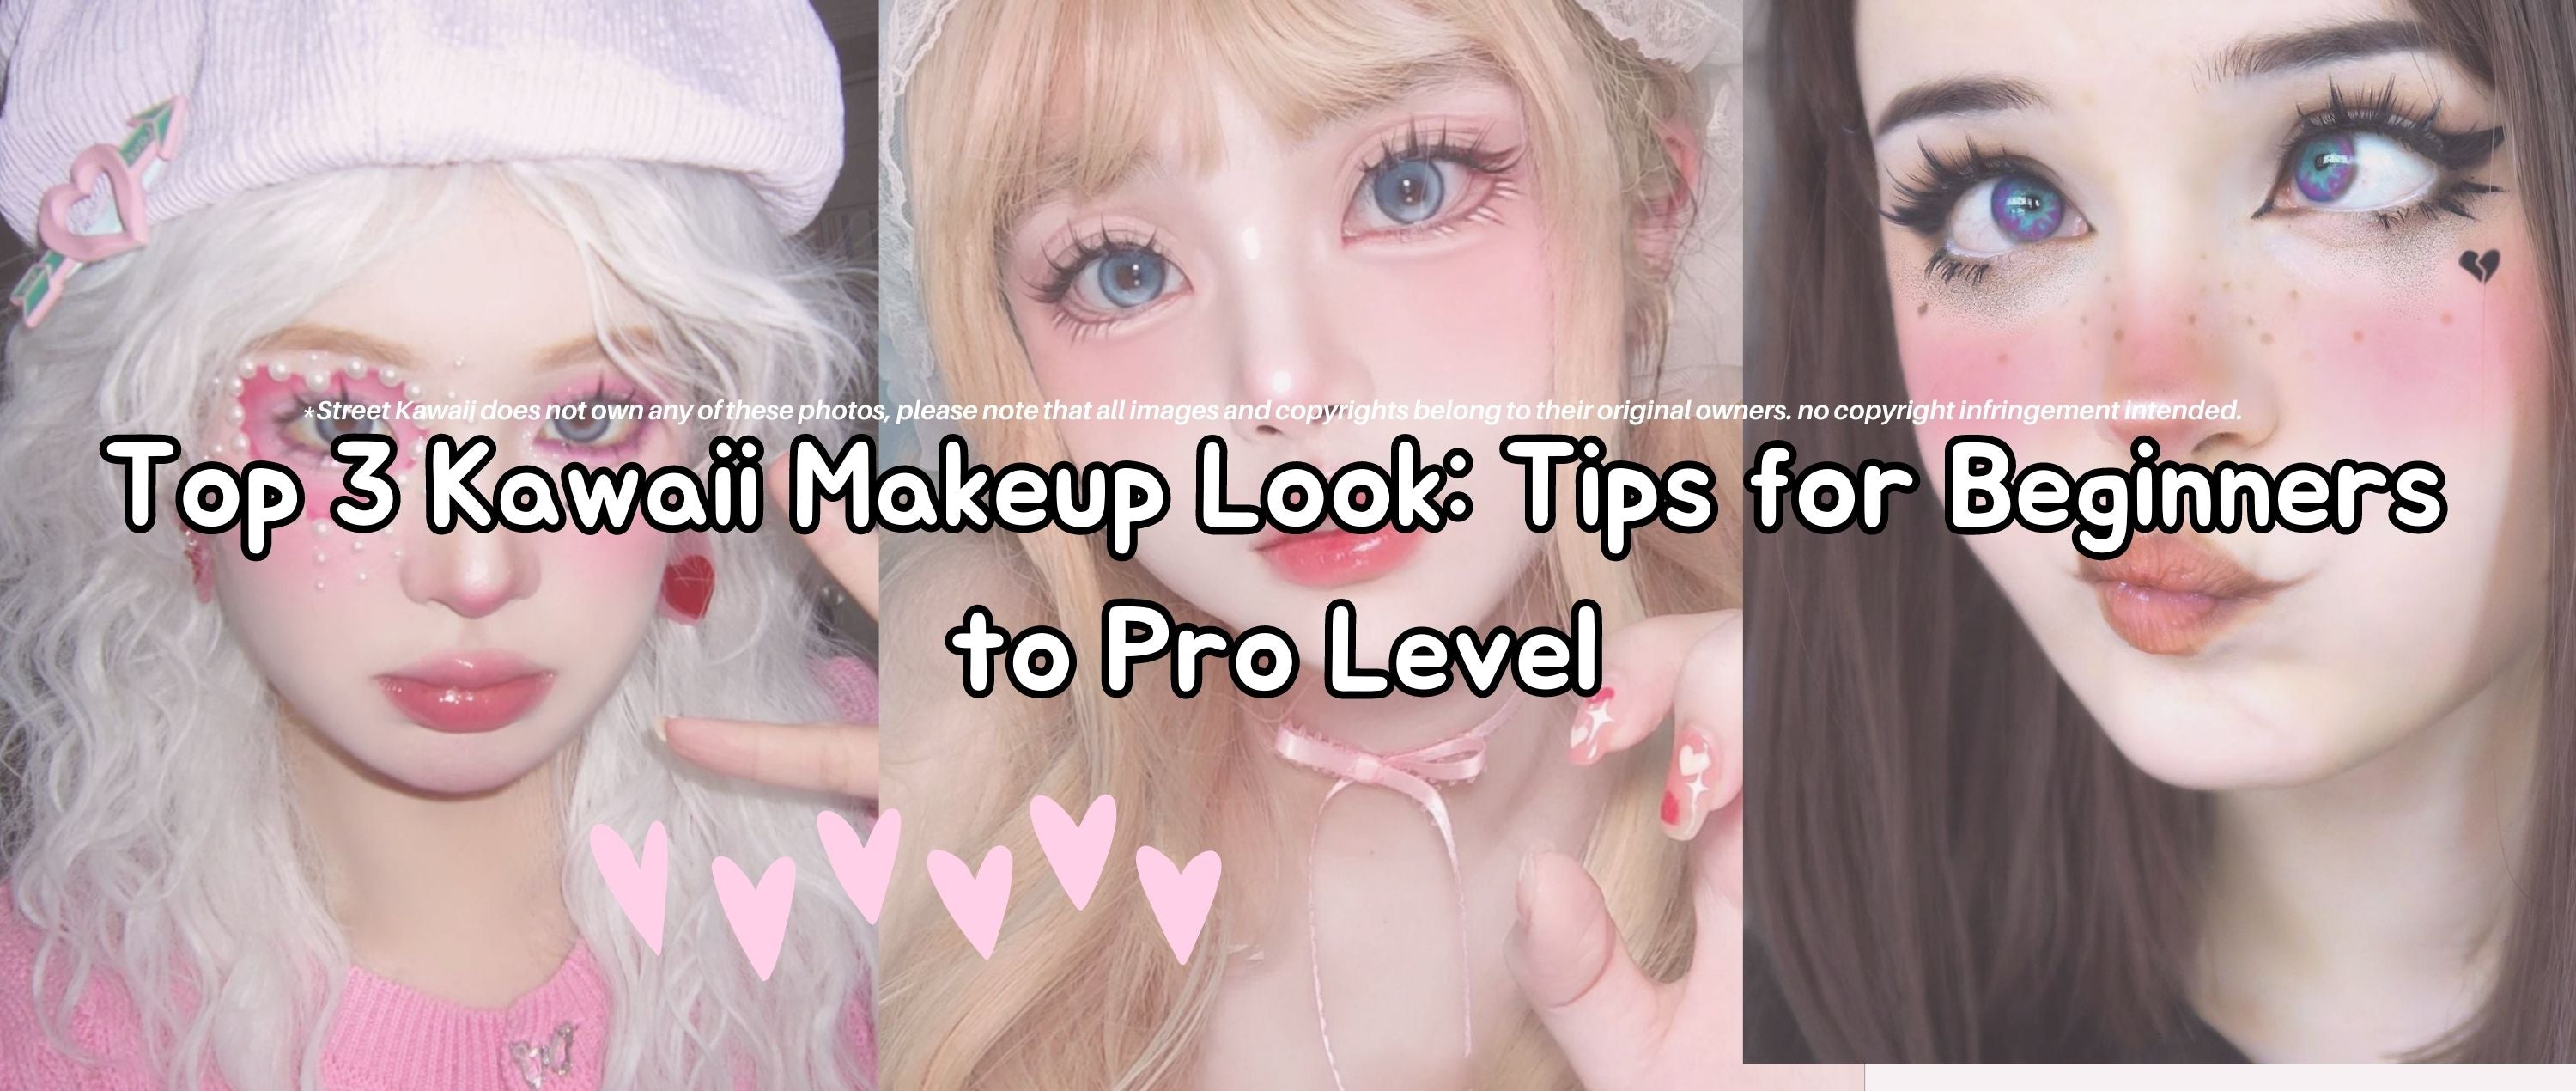 Top 3 Kawaii Makeup Look Tips For